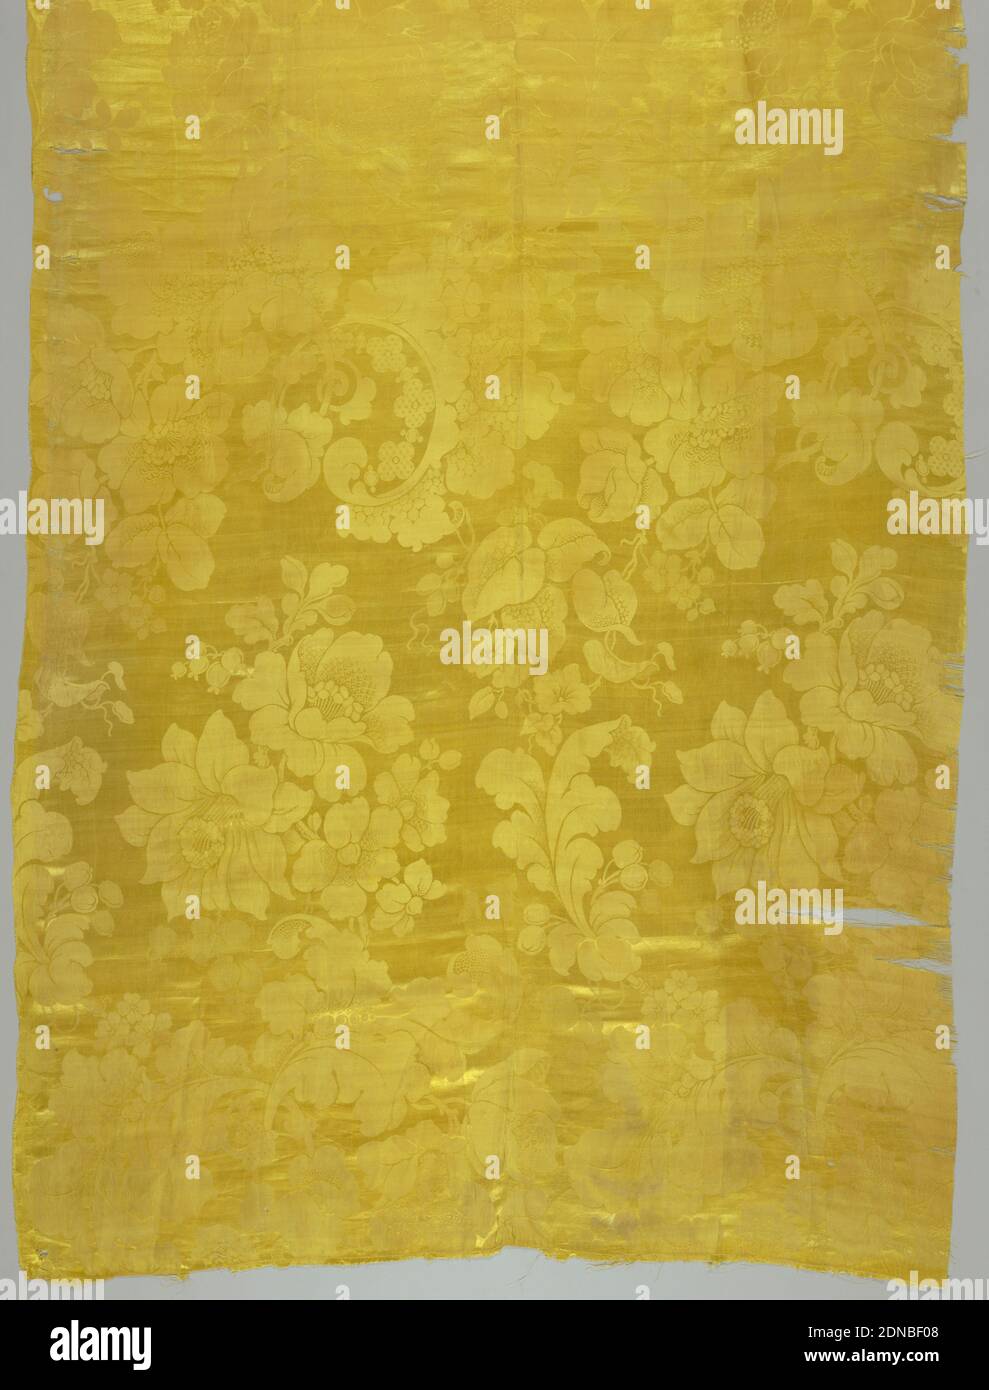 Textile, moyenne : soie technique : Damas, satin 7&1, jaune, motif à grande échelle avec de grandes fleurs y compris les jonquilles., Angleterre, 1850–1880, textiles tissés, textile Banque D'Images